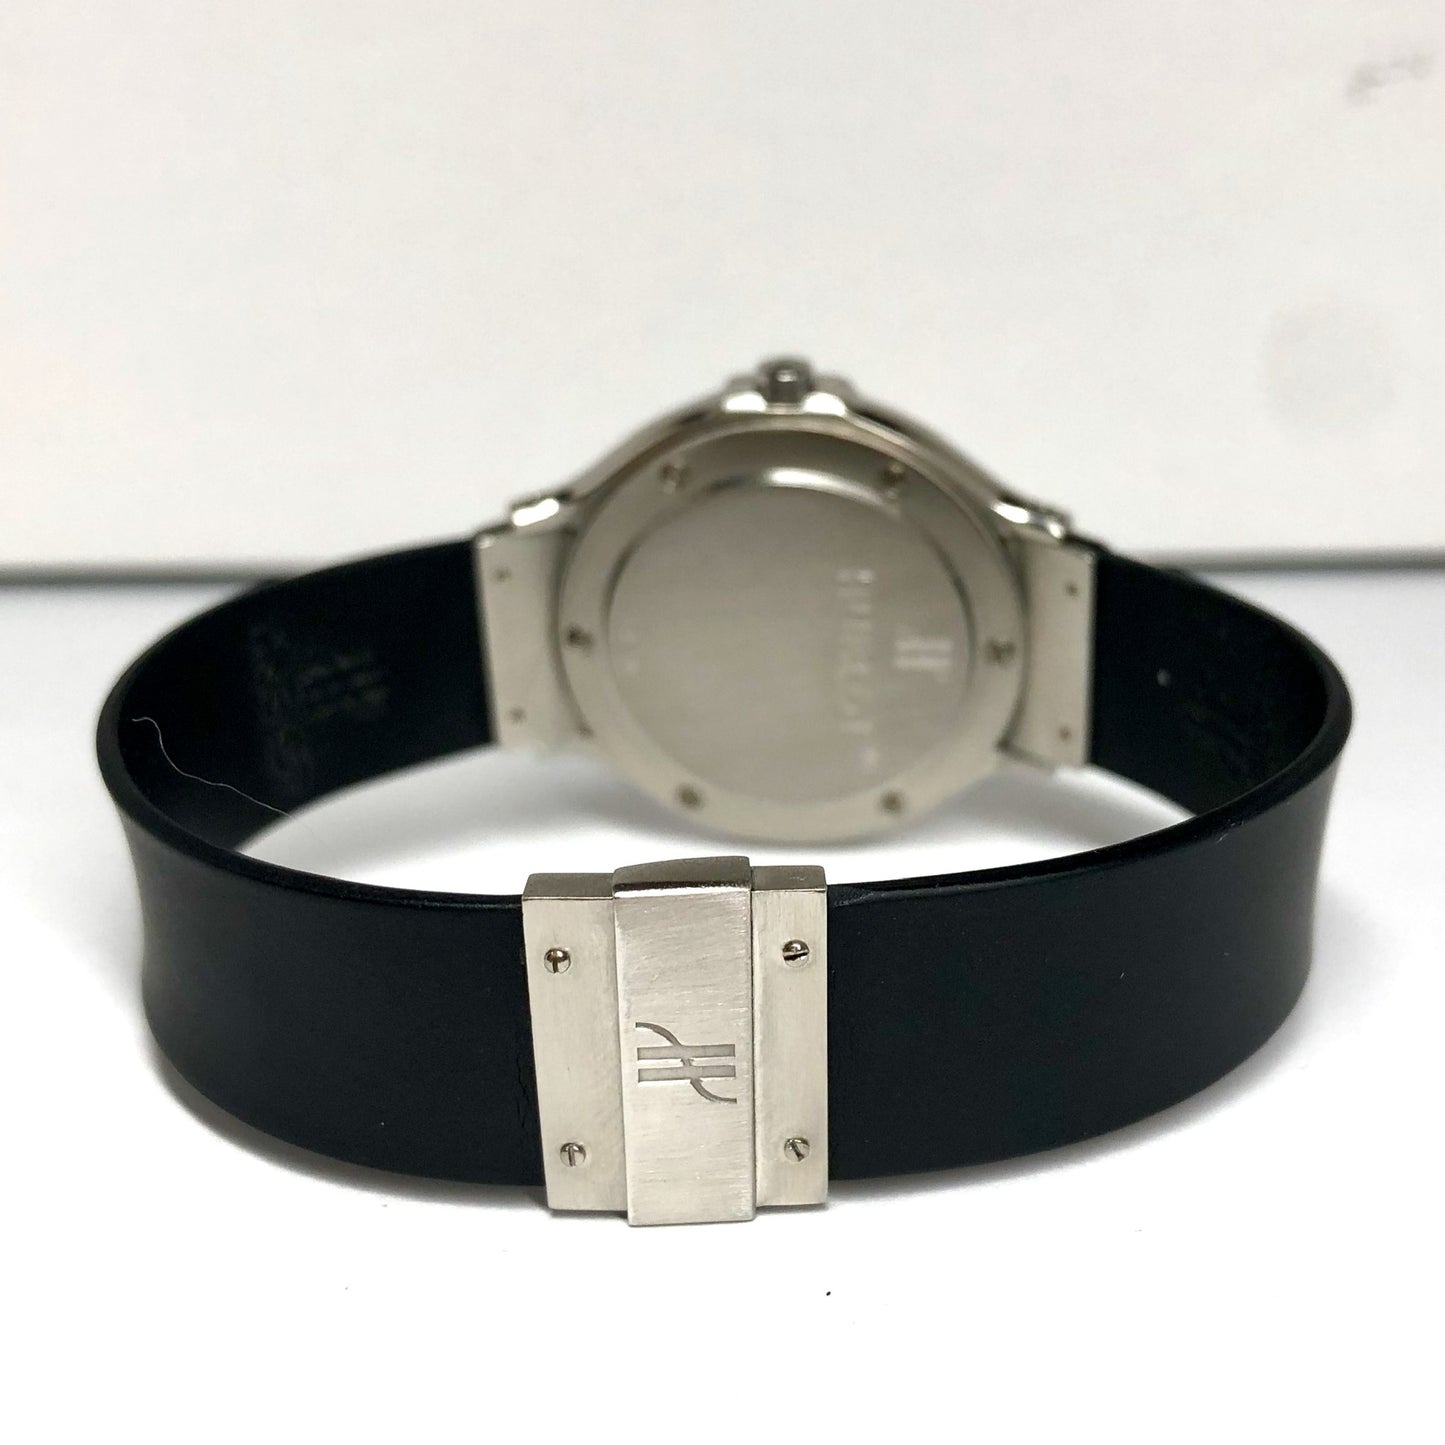 HUBLOT MDM 140.10.1 Quartz Steel 31mm 0.66TCW DIAMOND Watch